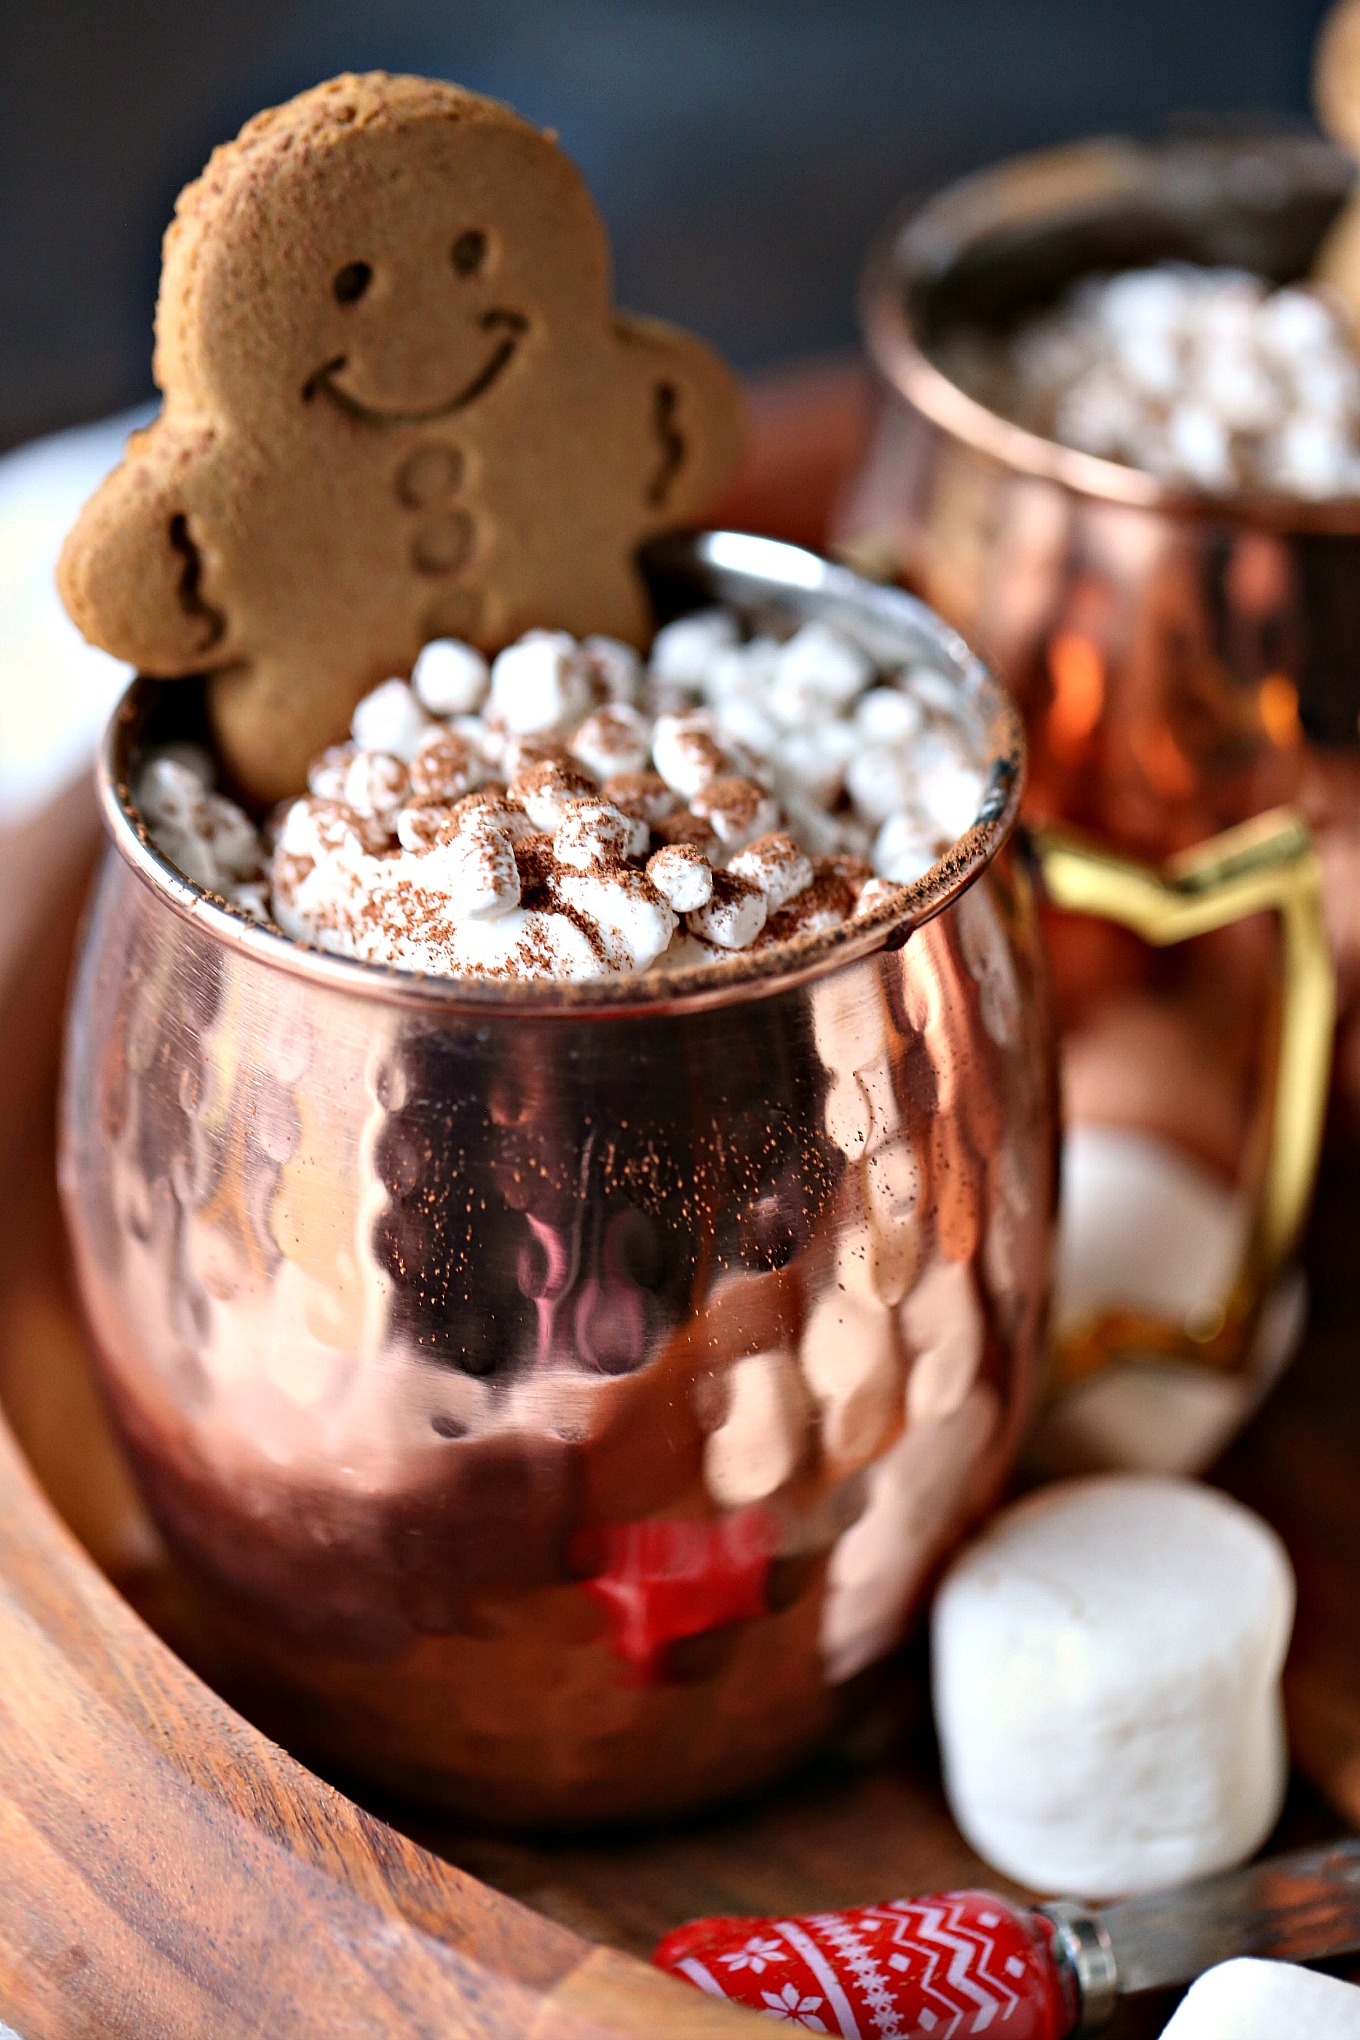 Gingerbread Hot Chocolate Recipe